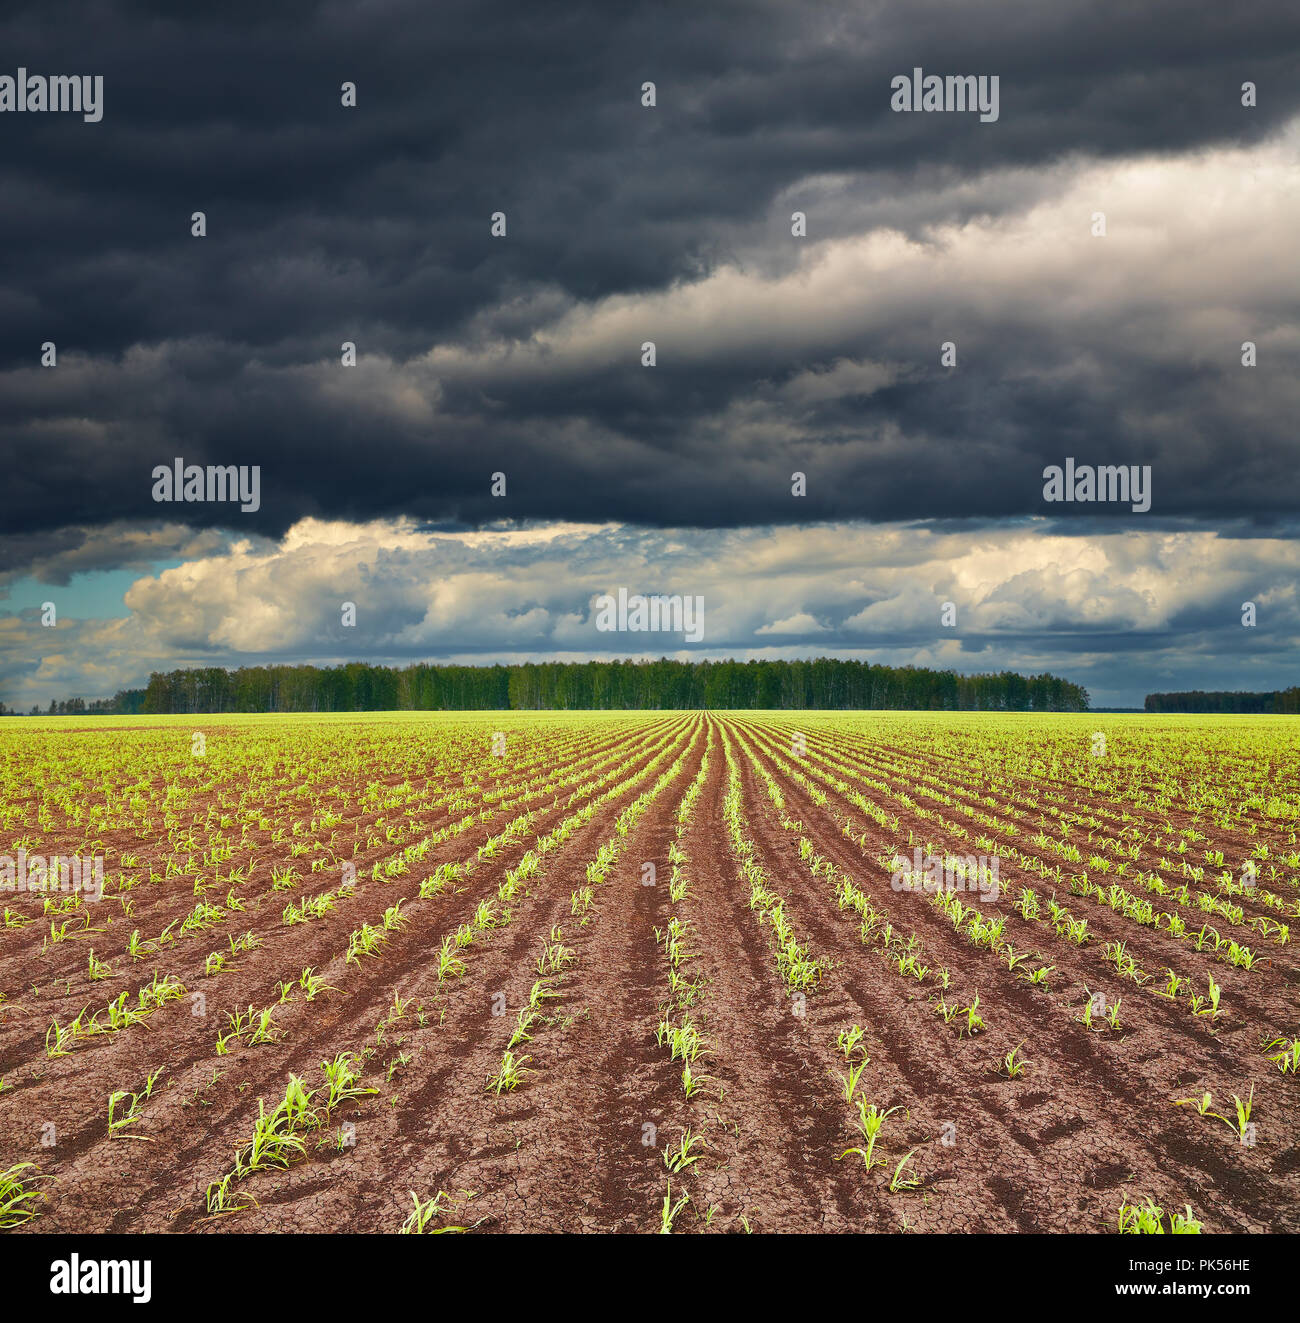 Avis de champ avec des cultures de germination et les nuages de tempête Banque D'Images